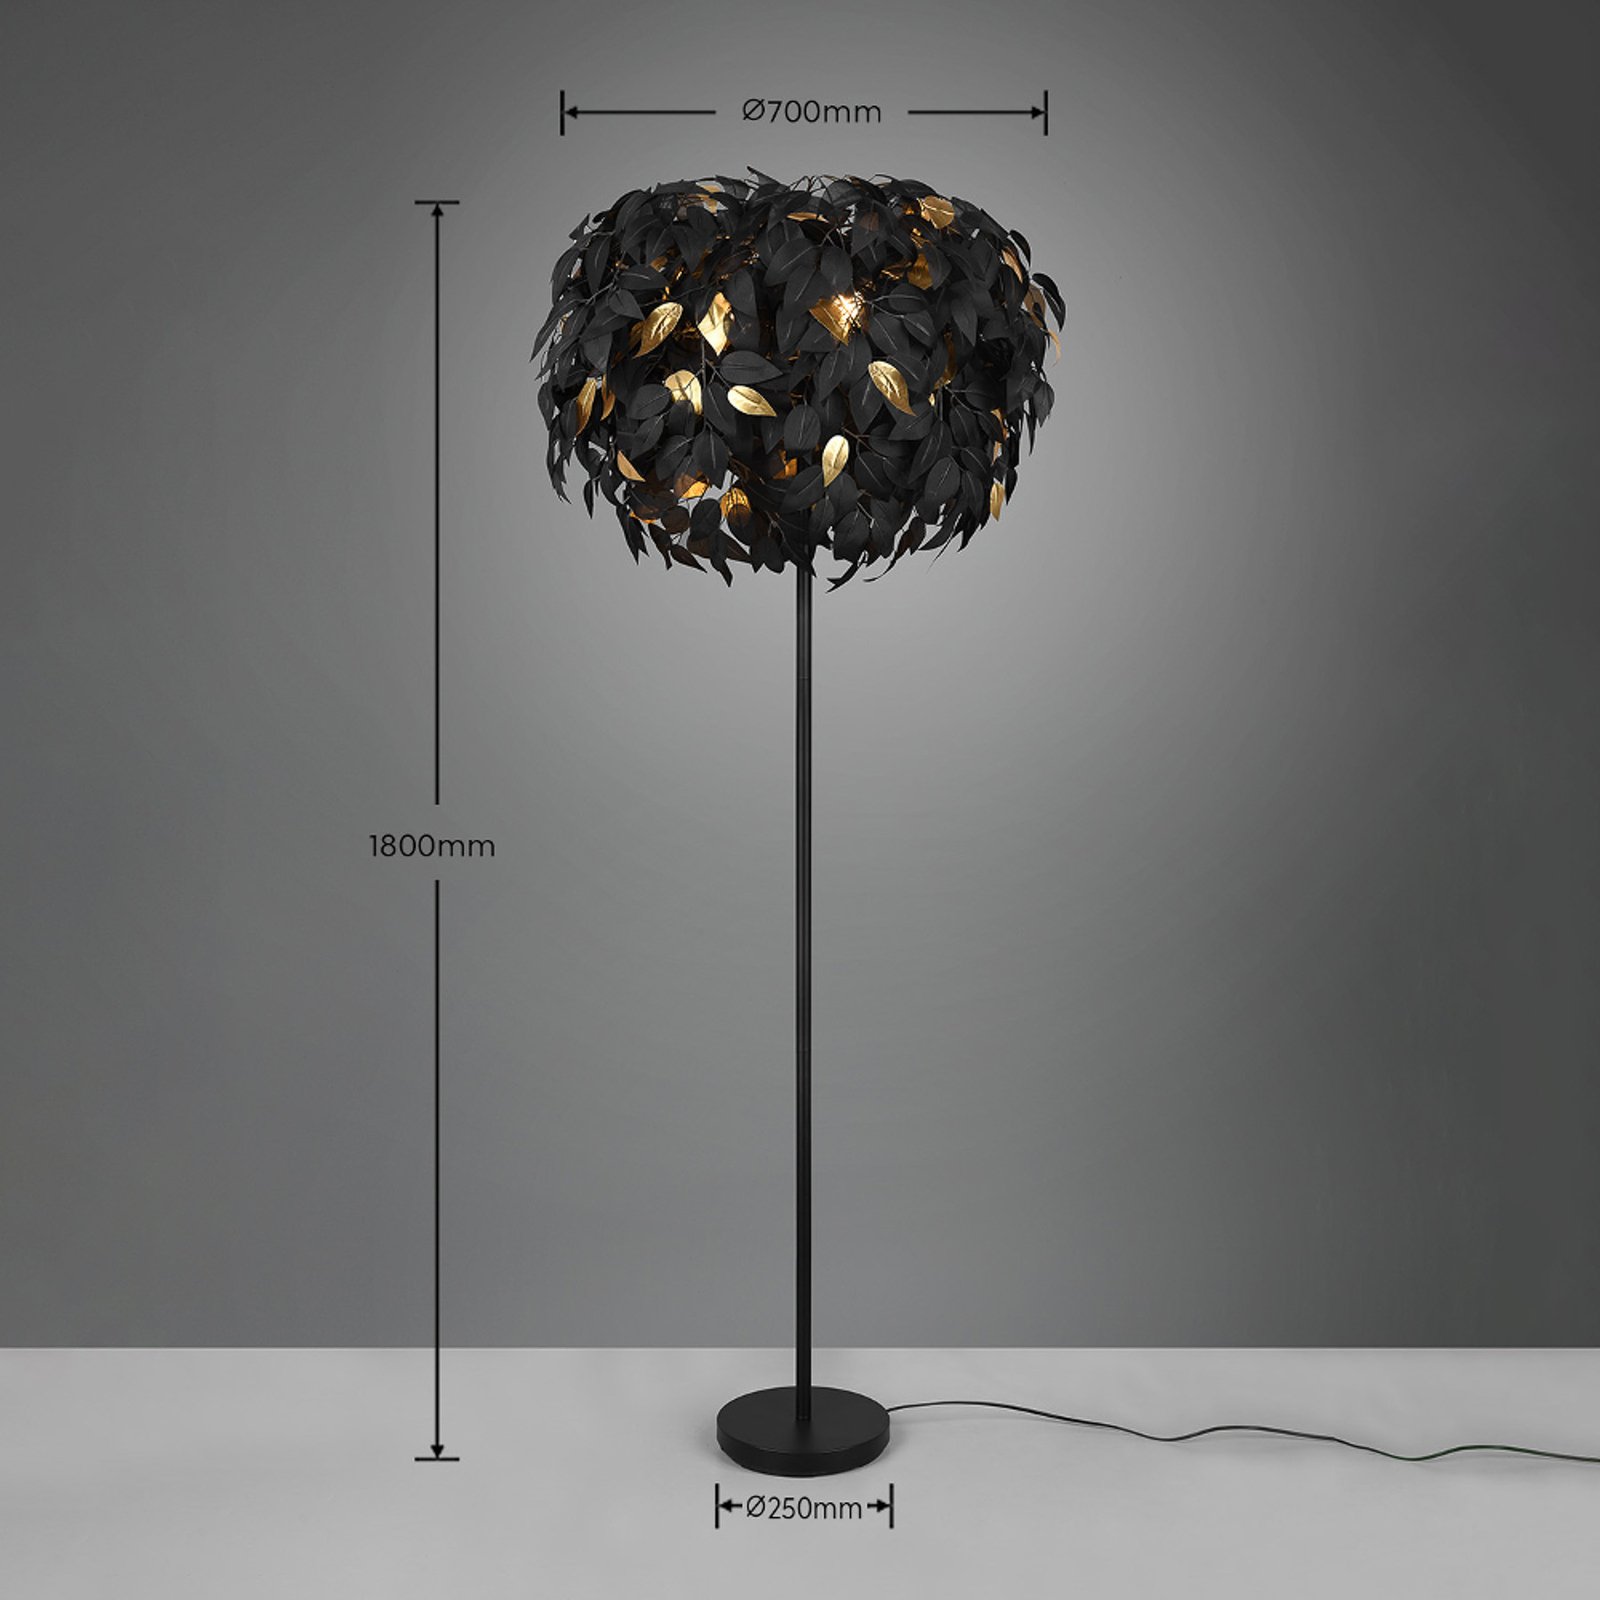 Stehlampe Leavy, schwarz/gold, Höhe 180 cm, Kunststoff